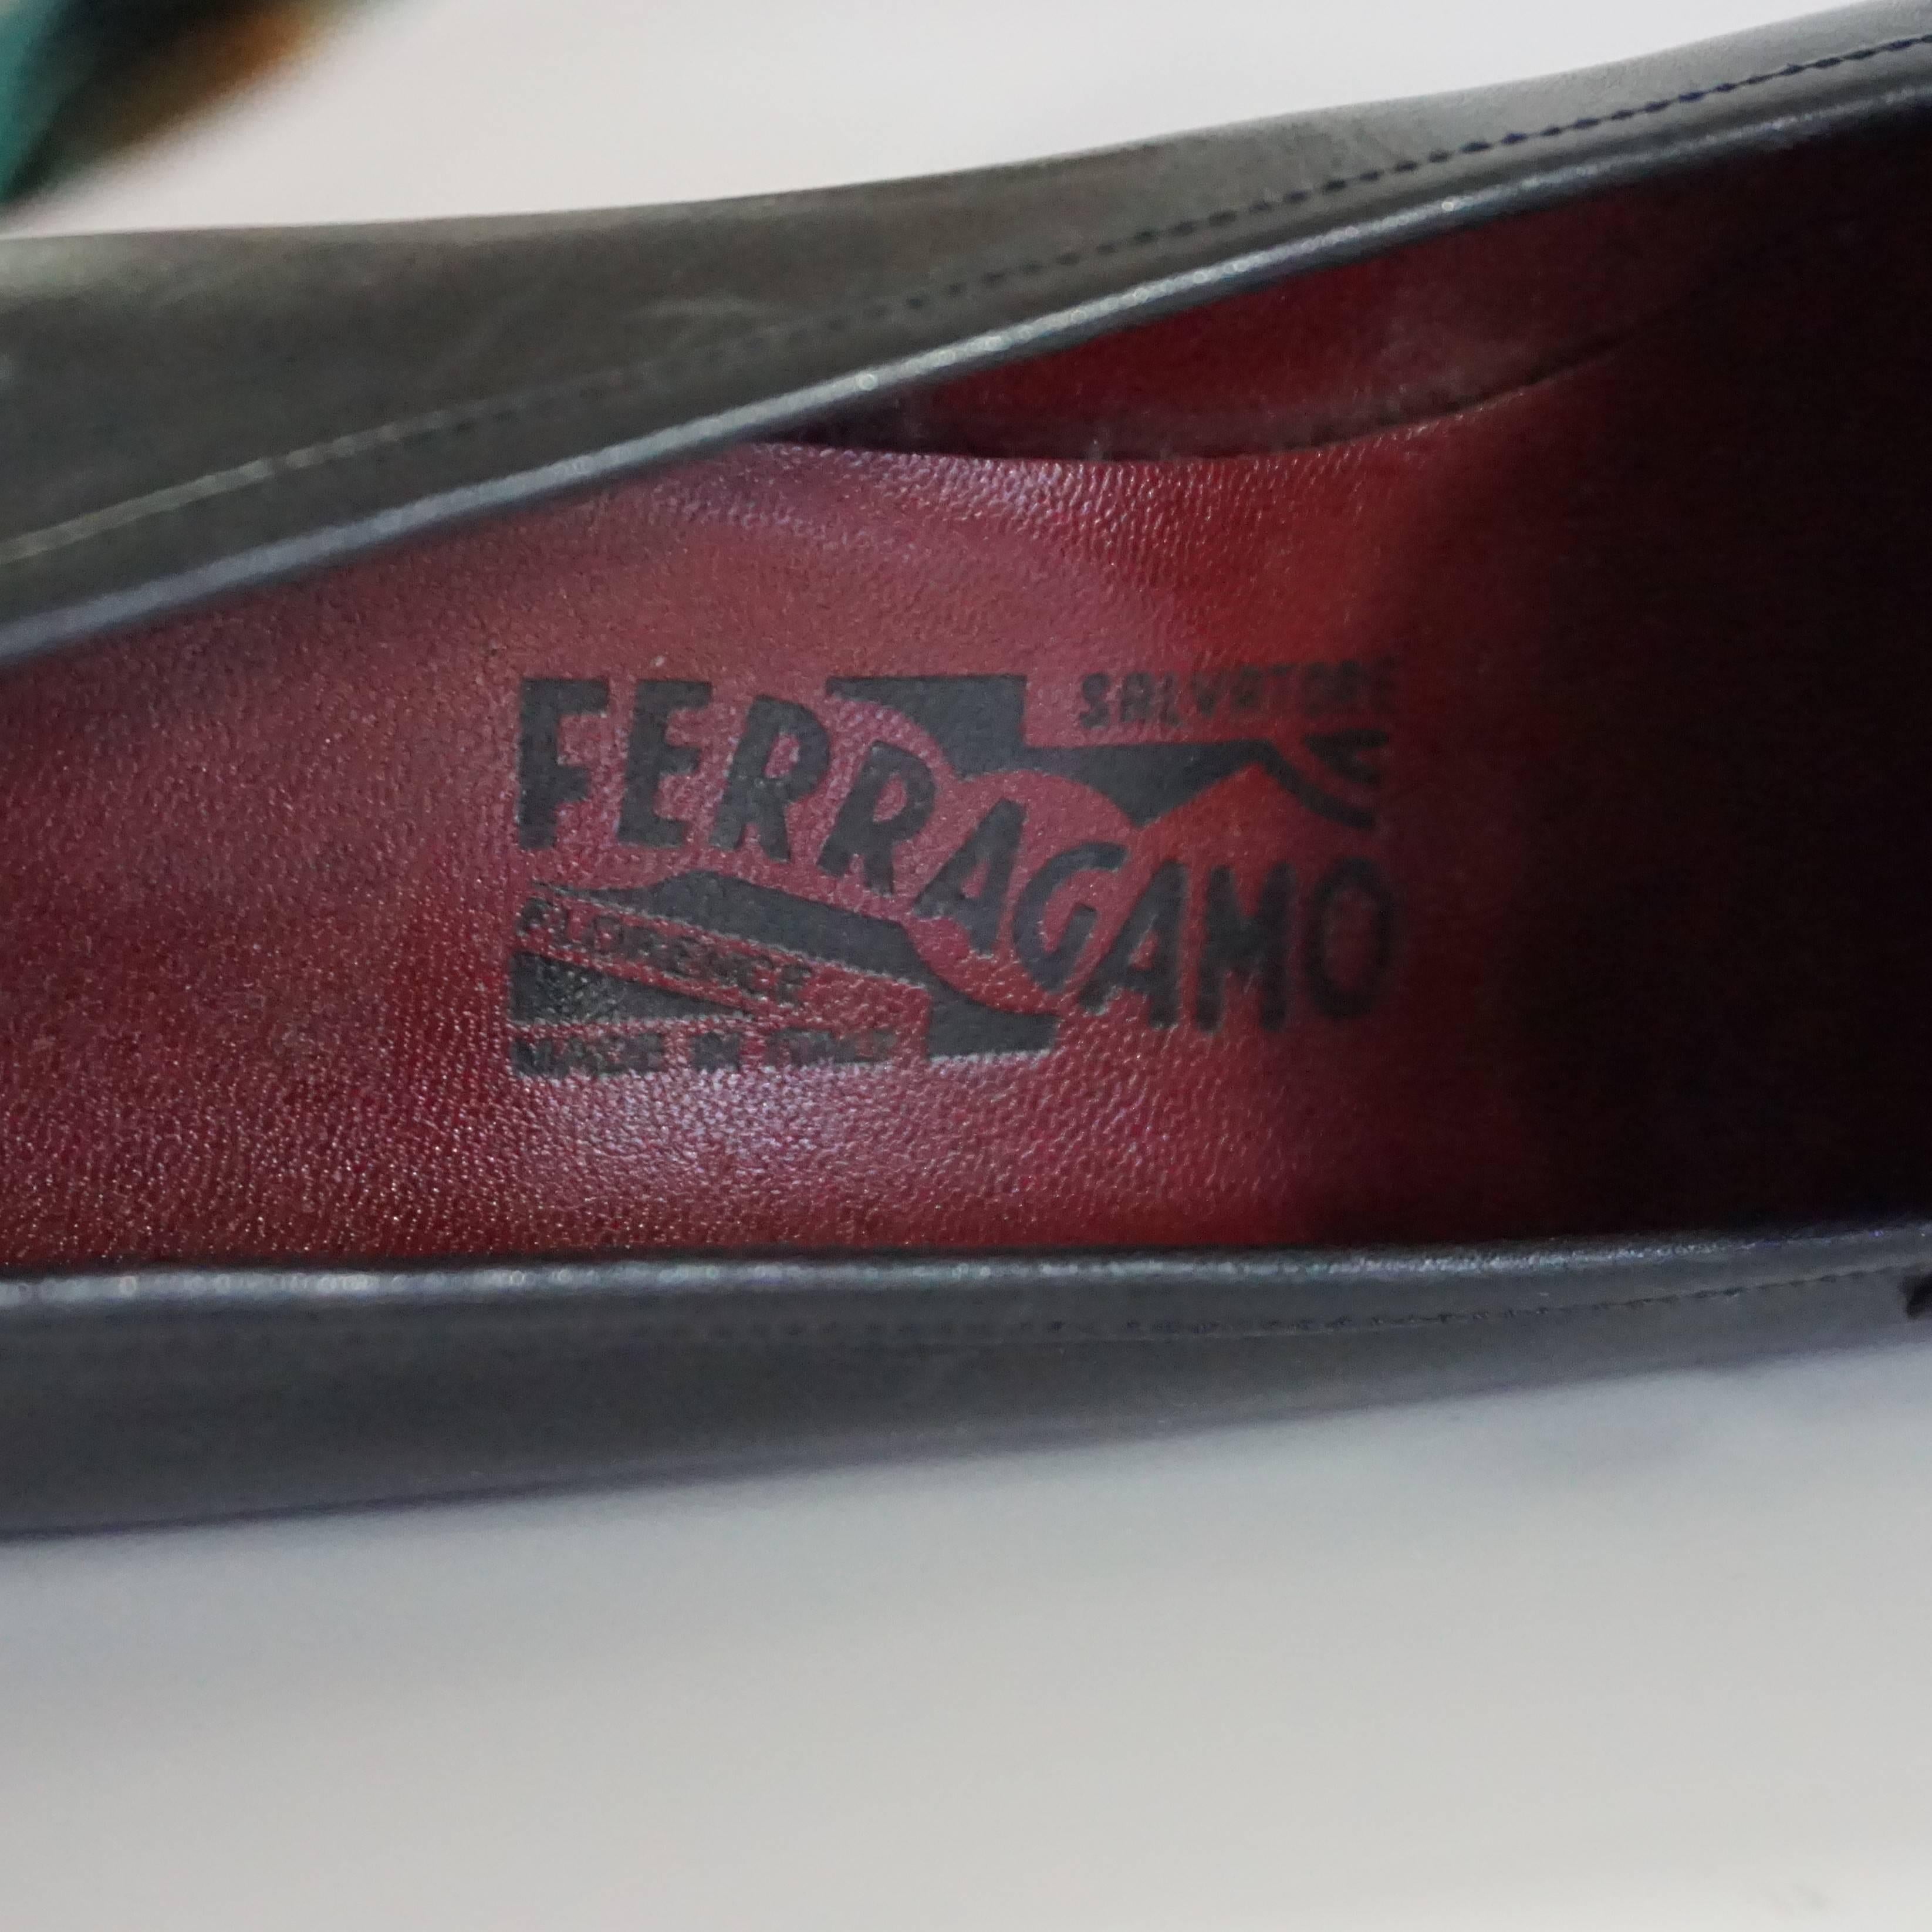 Salvatore Ferragamo Black Leather Loafers - 6.5 B 3